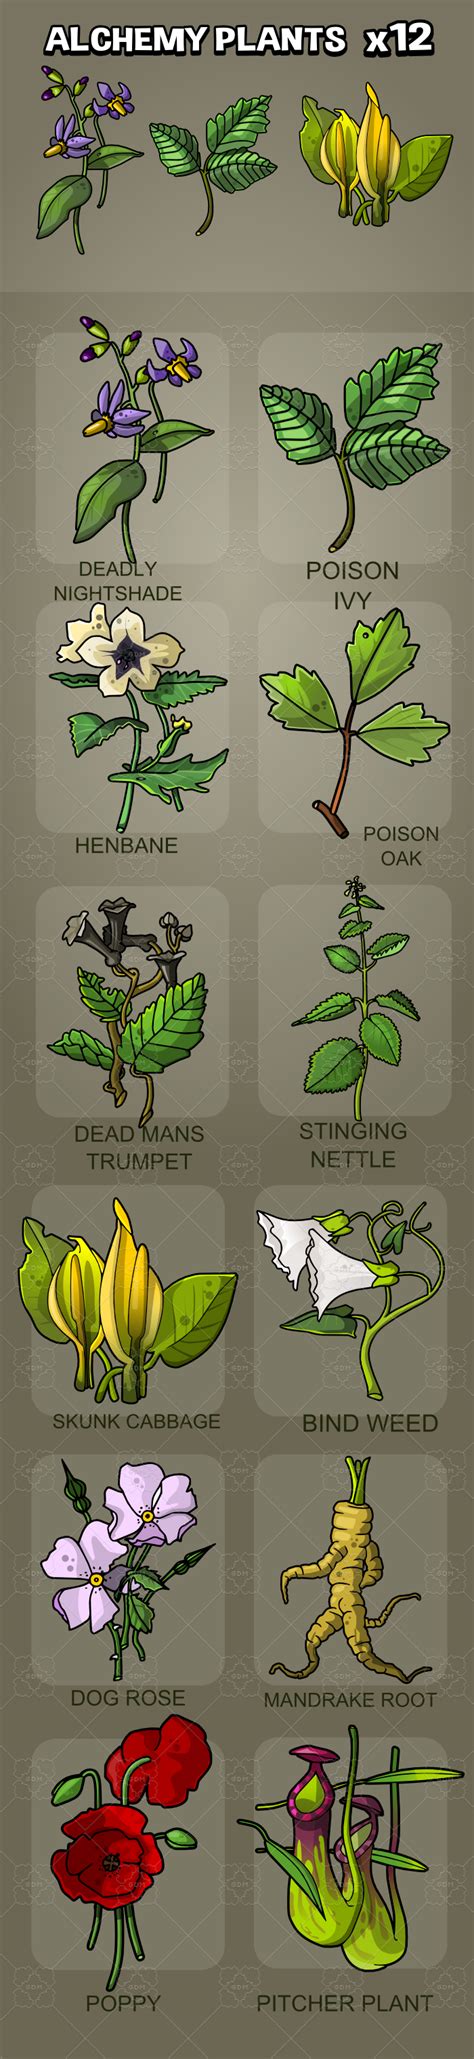 Magical plant grimoire